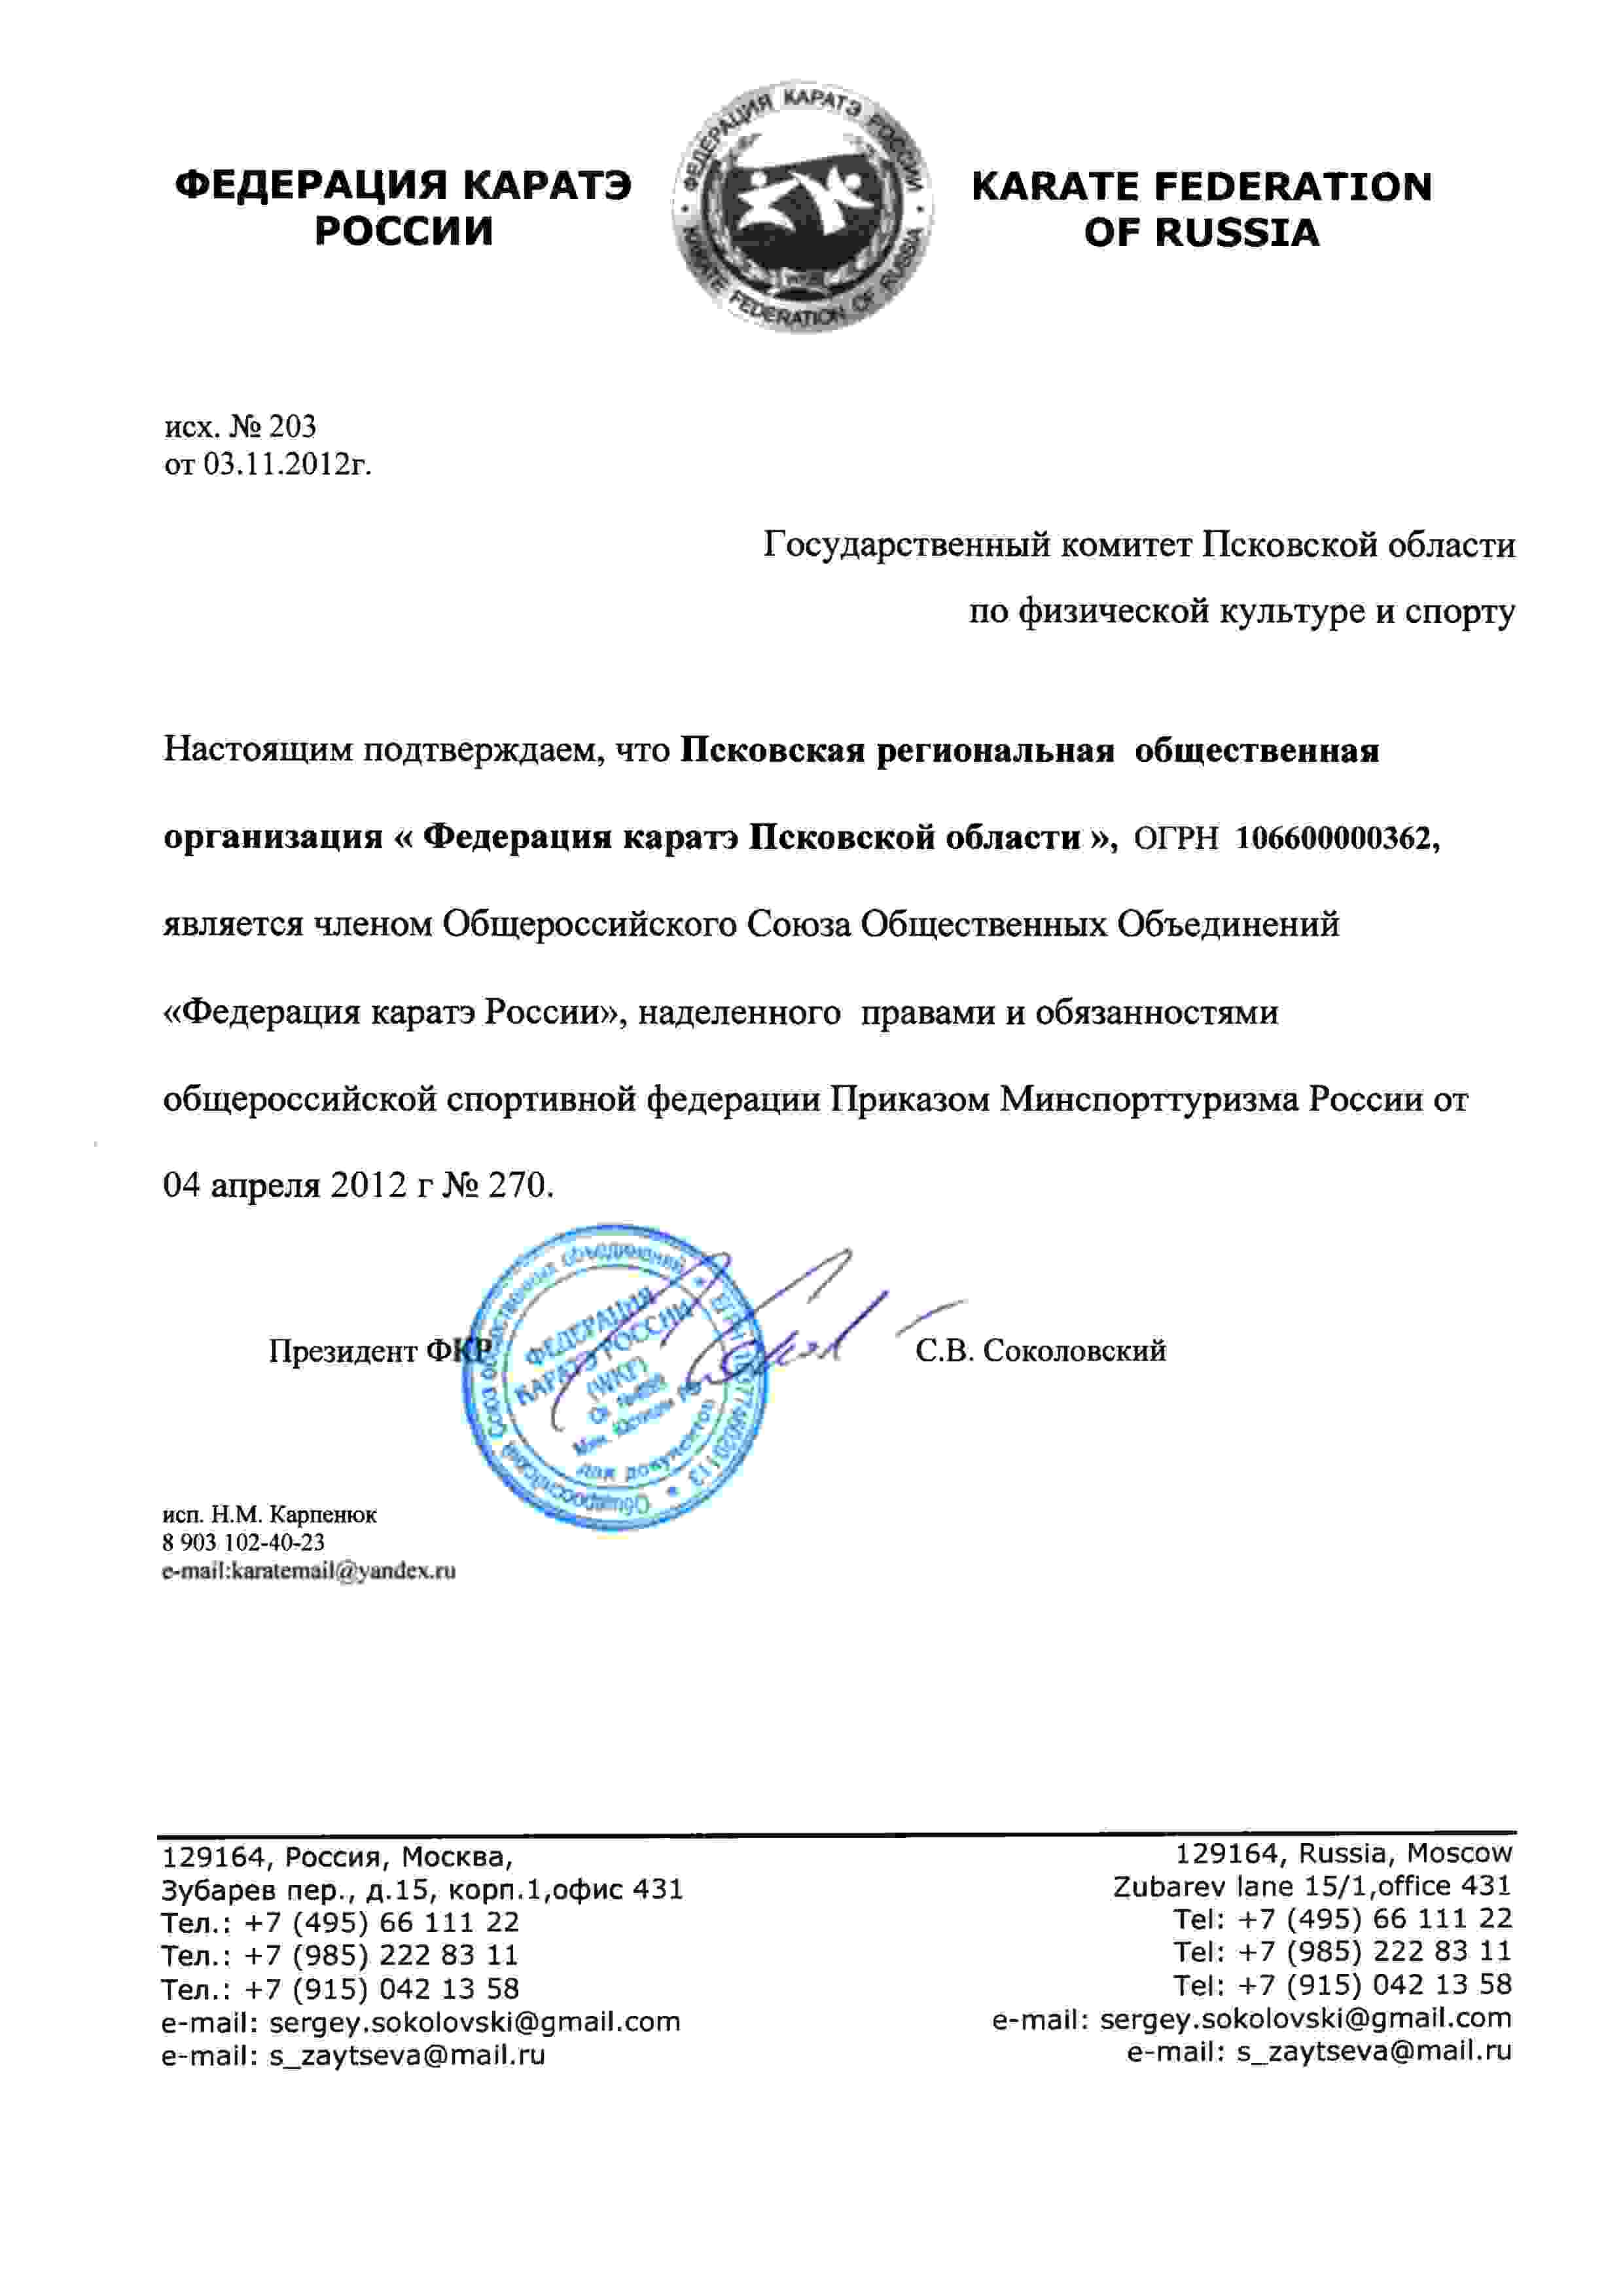 Членство в Федерации Каратэ России